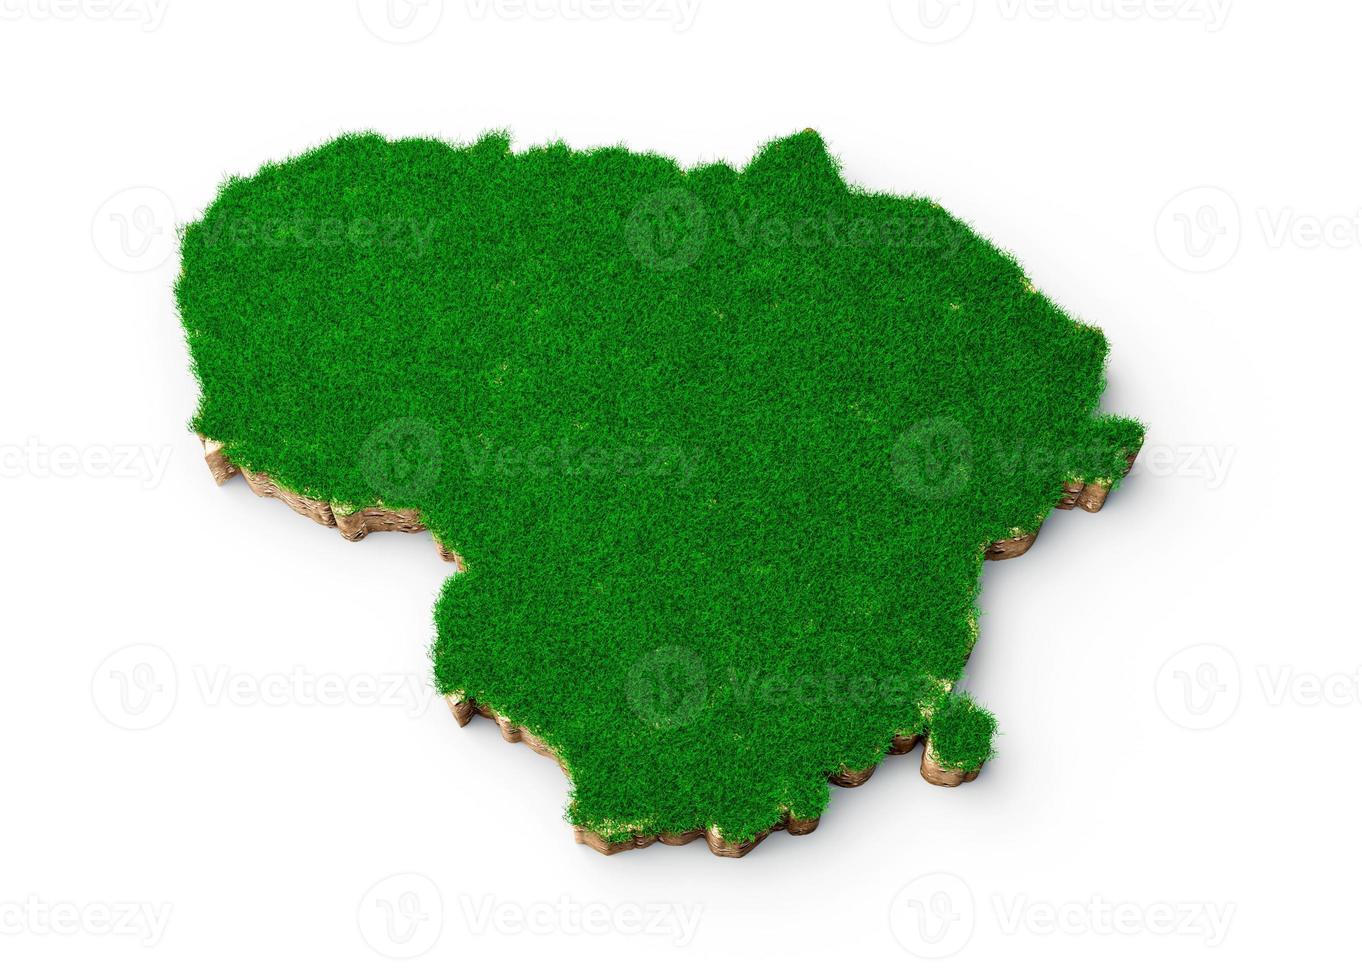 carte de la lituanie coupe transversale de la géologie des sols avec de l'herbe verte et de la texture du sol rocheux illustration 3d photo